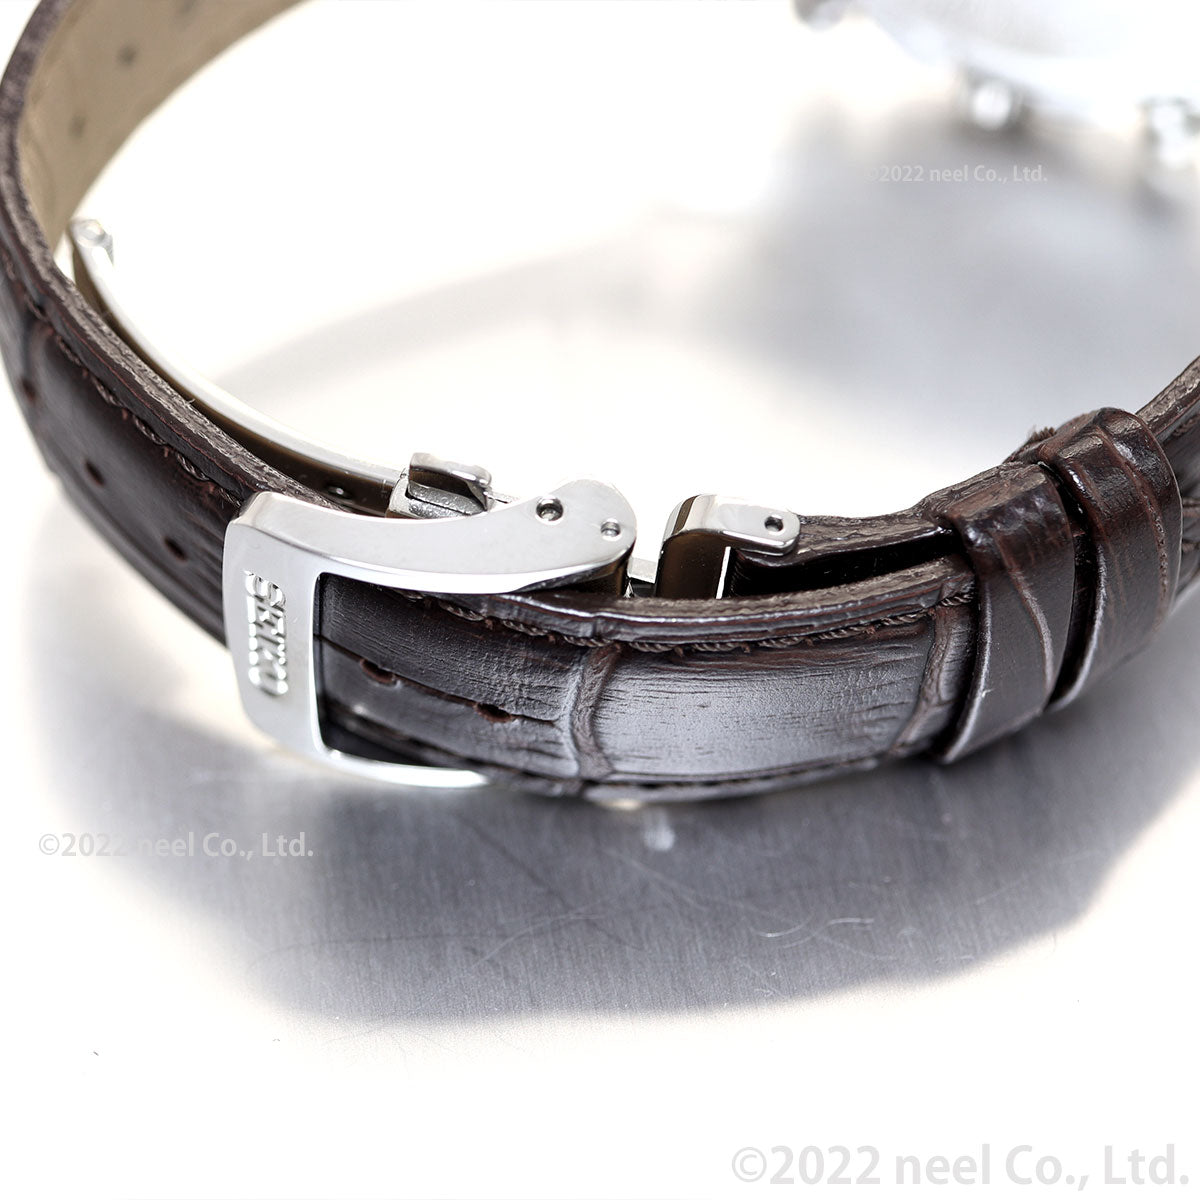 セイコー セレクション SEIKO SELECTION 8Tクロノ SBTR017 腕時計 メンズ クロノグラフ